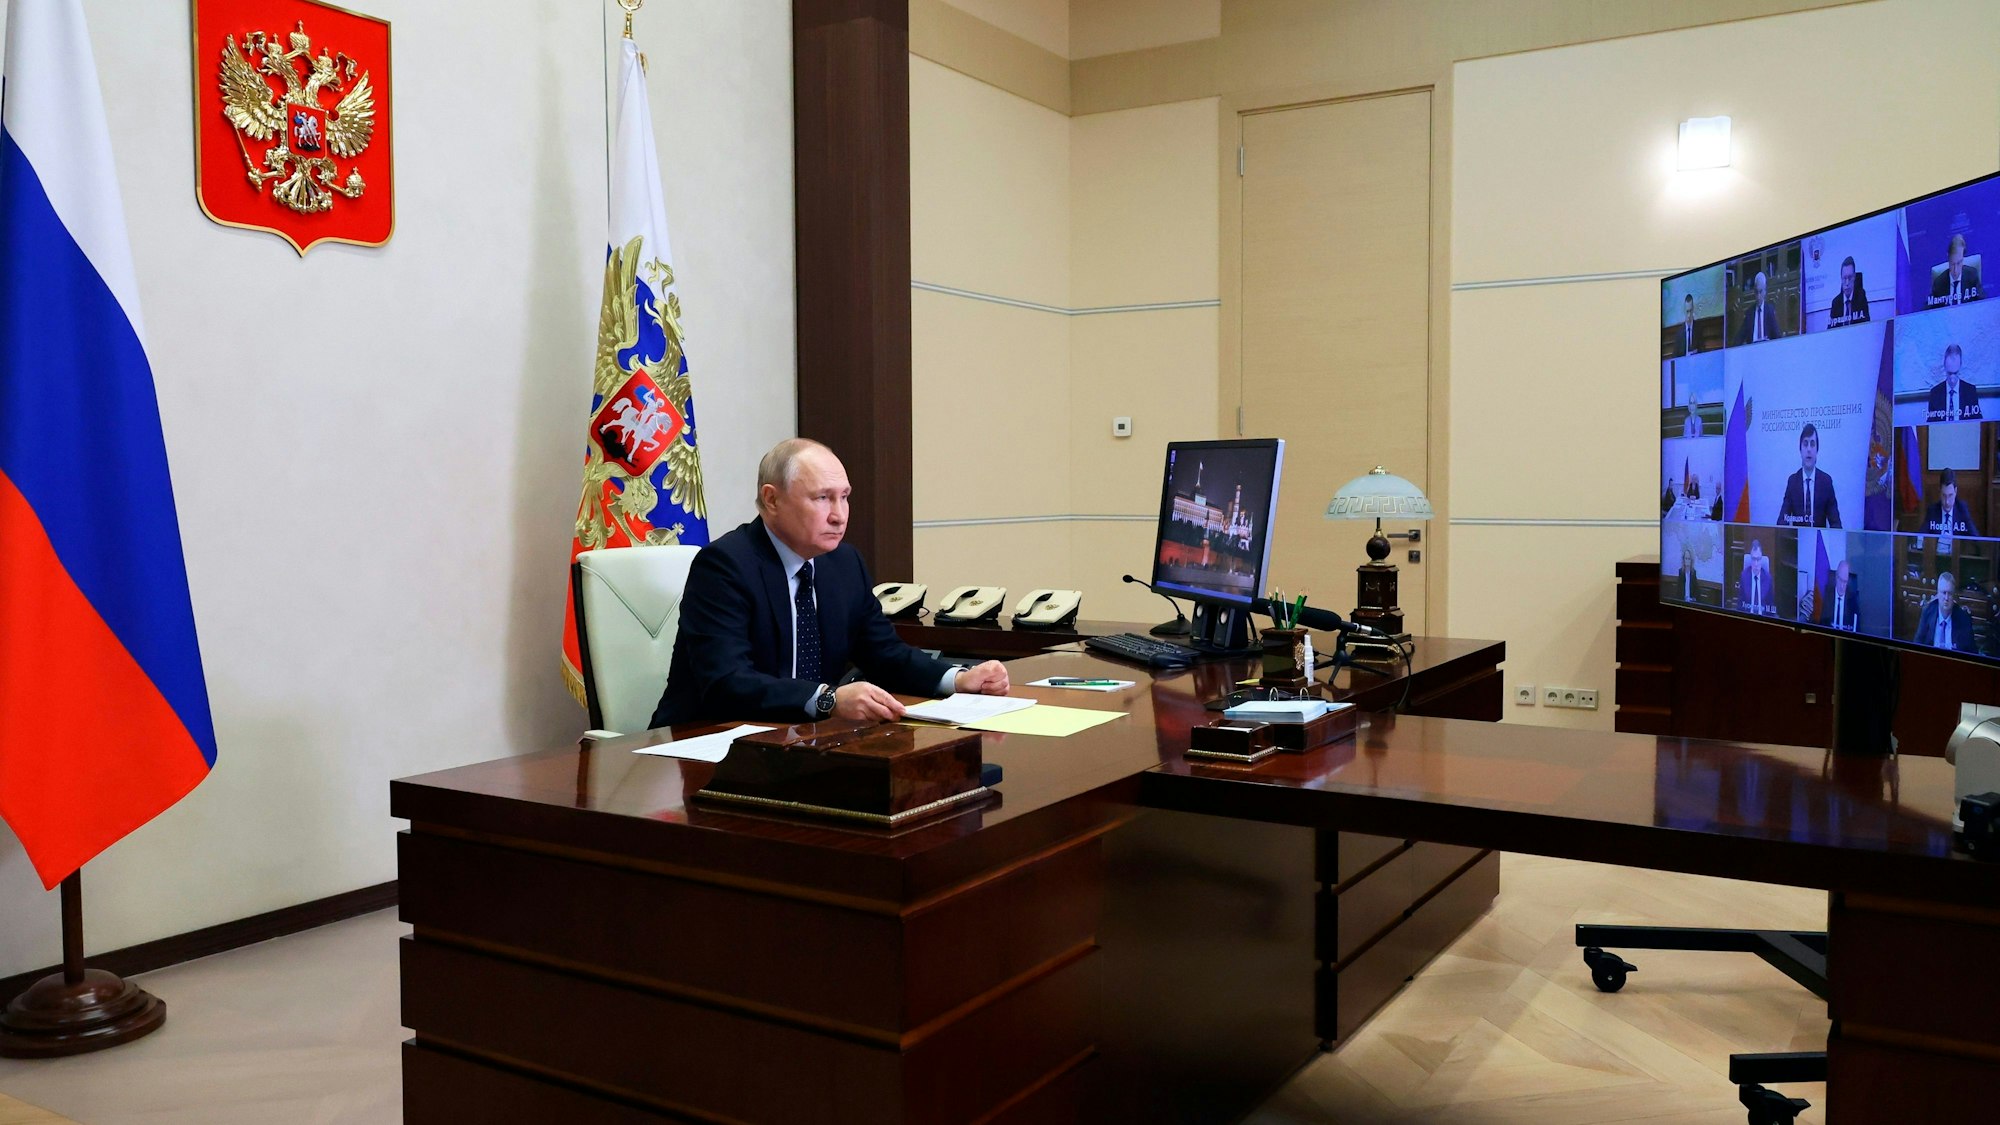 Der russische Präsident Wladimir Putin sitzt während einer Videokonferenz an seinem Schreibtisch.